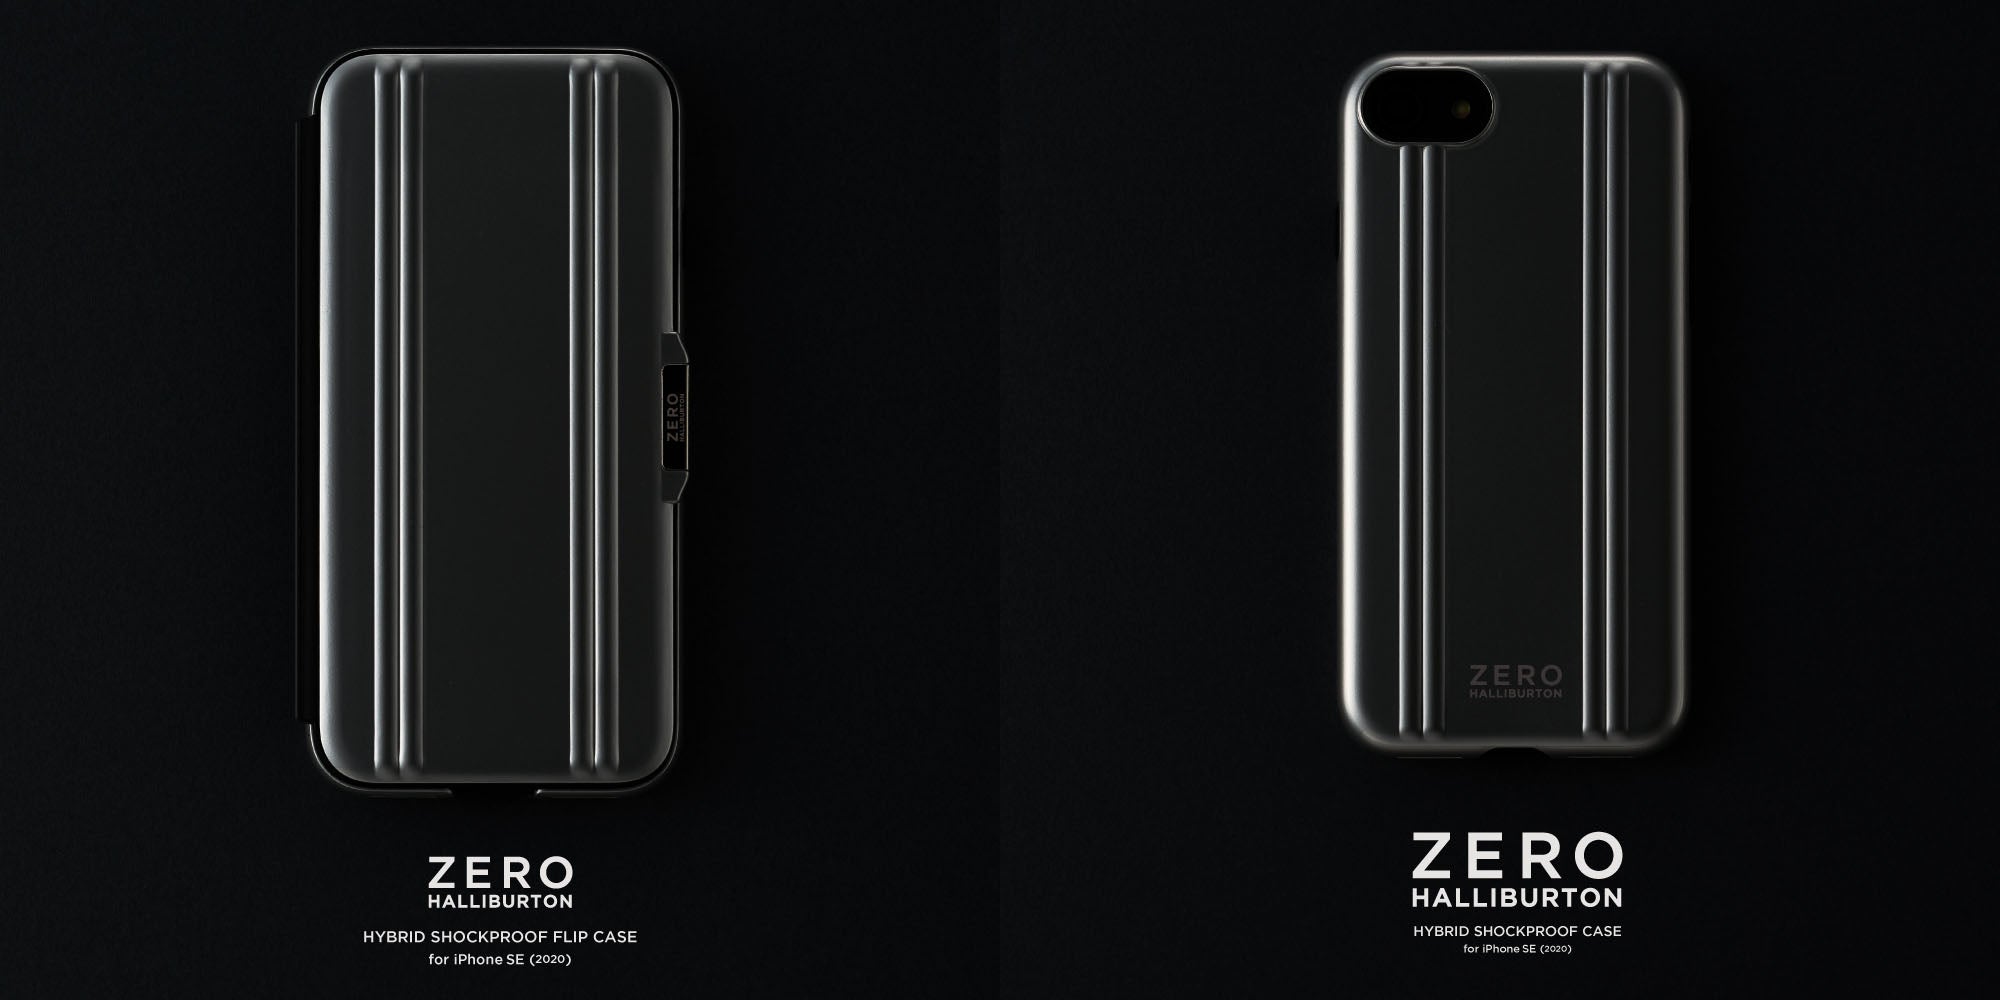 ゼロハリバートンのiPhoneケース - iPhone SE対応モデル5月4日デビュー 